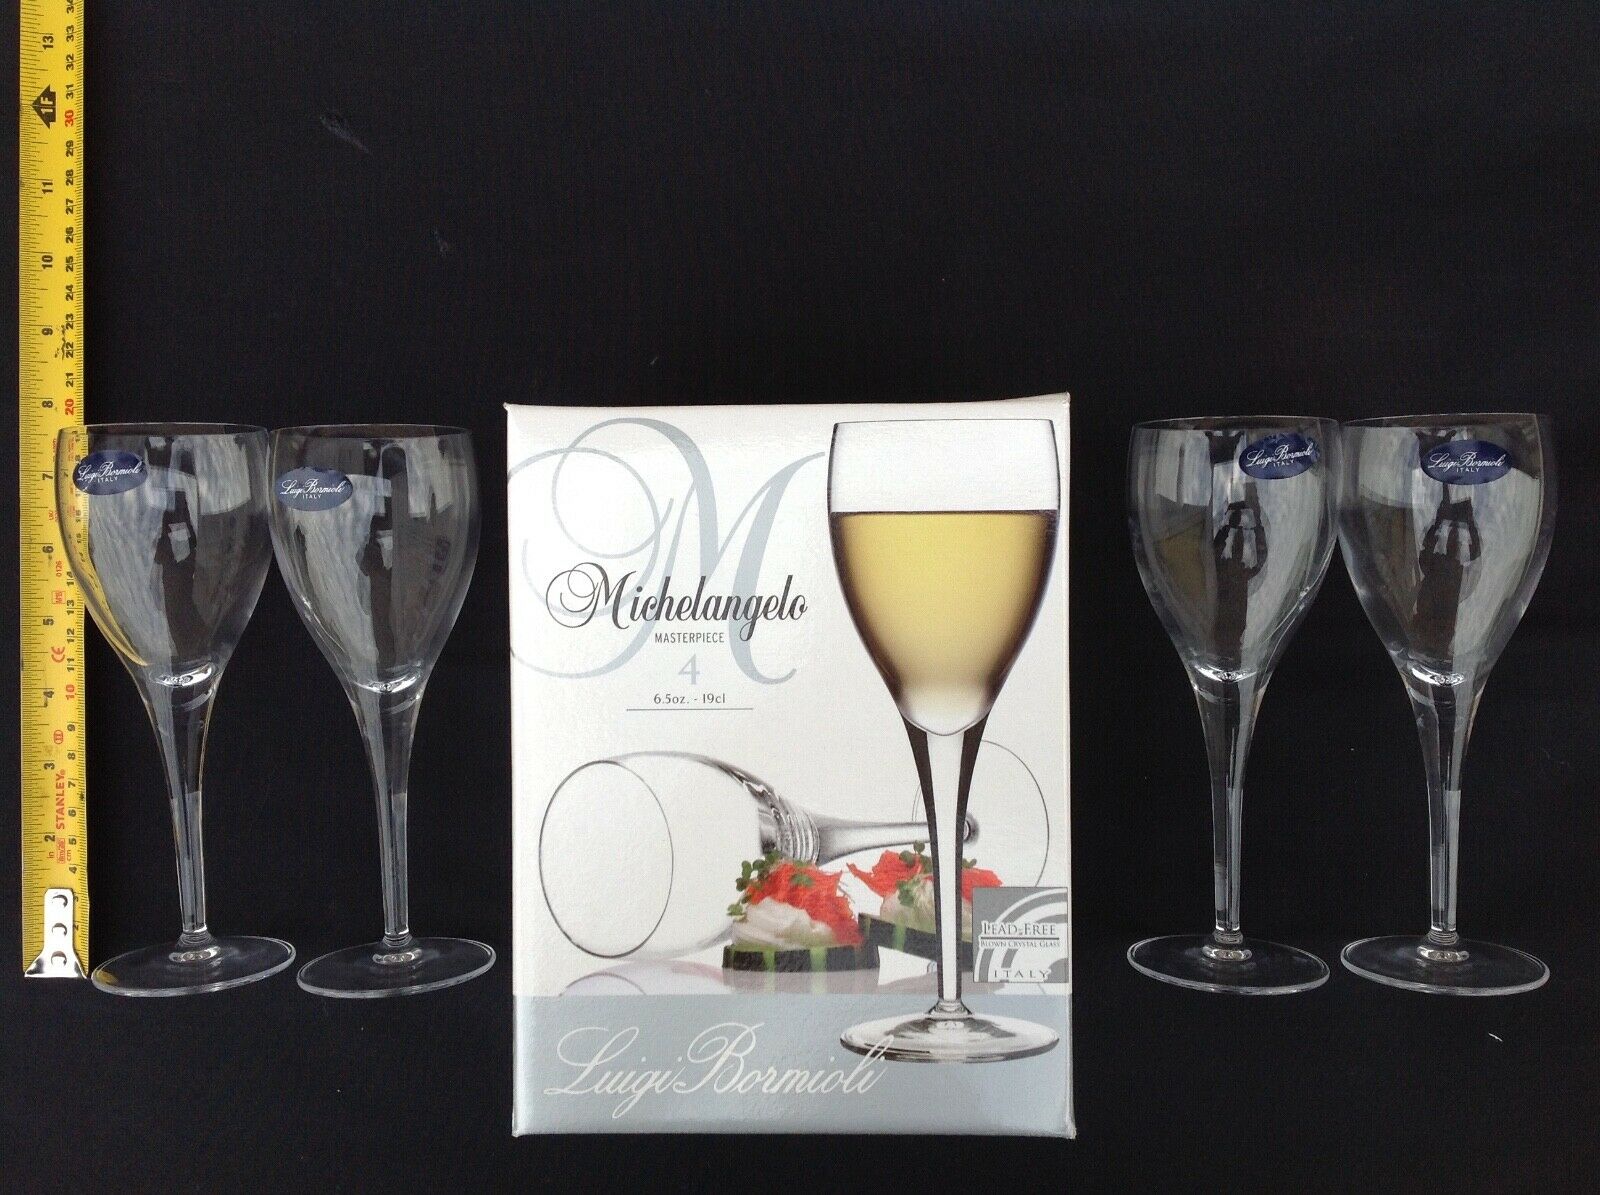 https://for-sale.used-secondhand.co.uk/media/secondhand/images/61497/luigi-bormioli-michelangelo-italian-crystal-wine-glasses-cheshire/luigi-bormioli-michelangelo-italian-crystal-wine-glasses-970.jpg